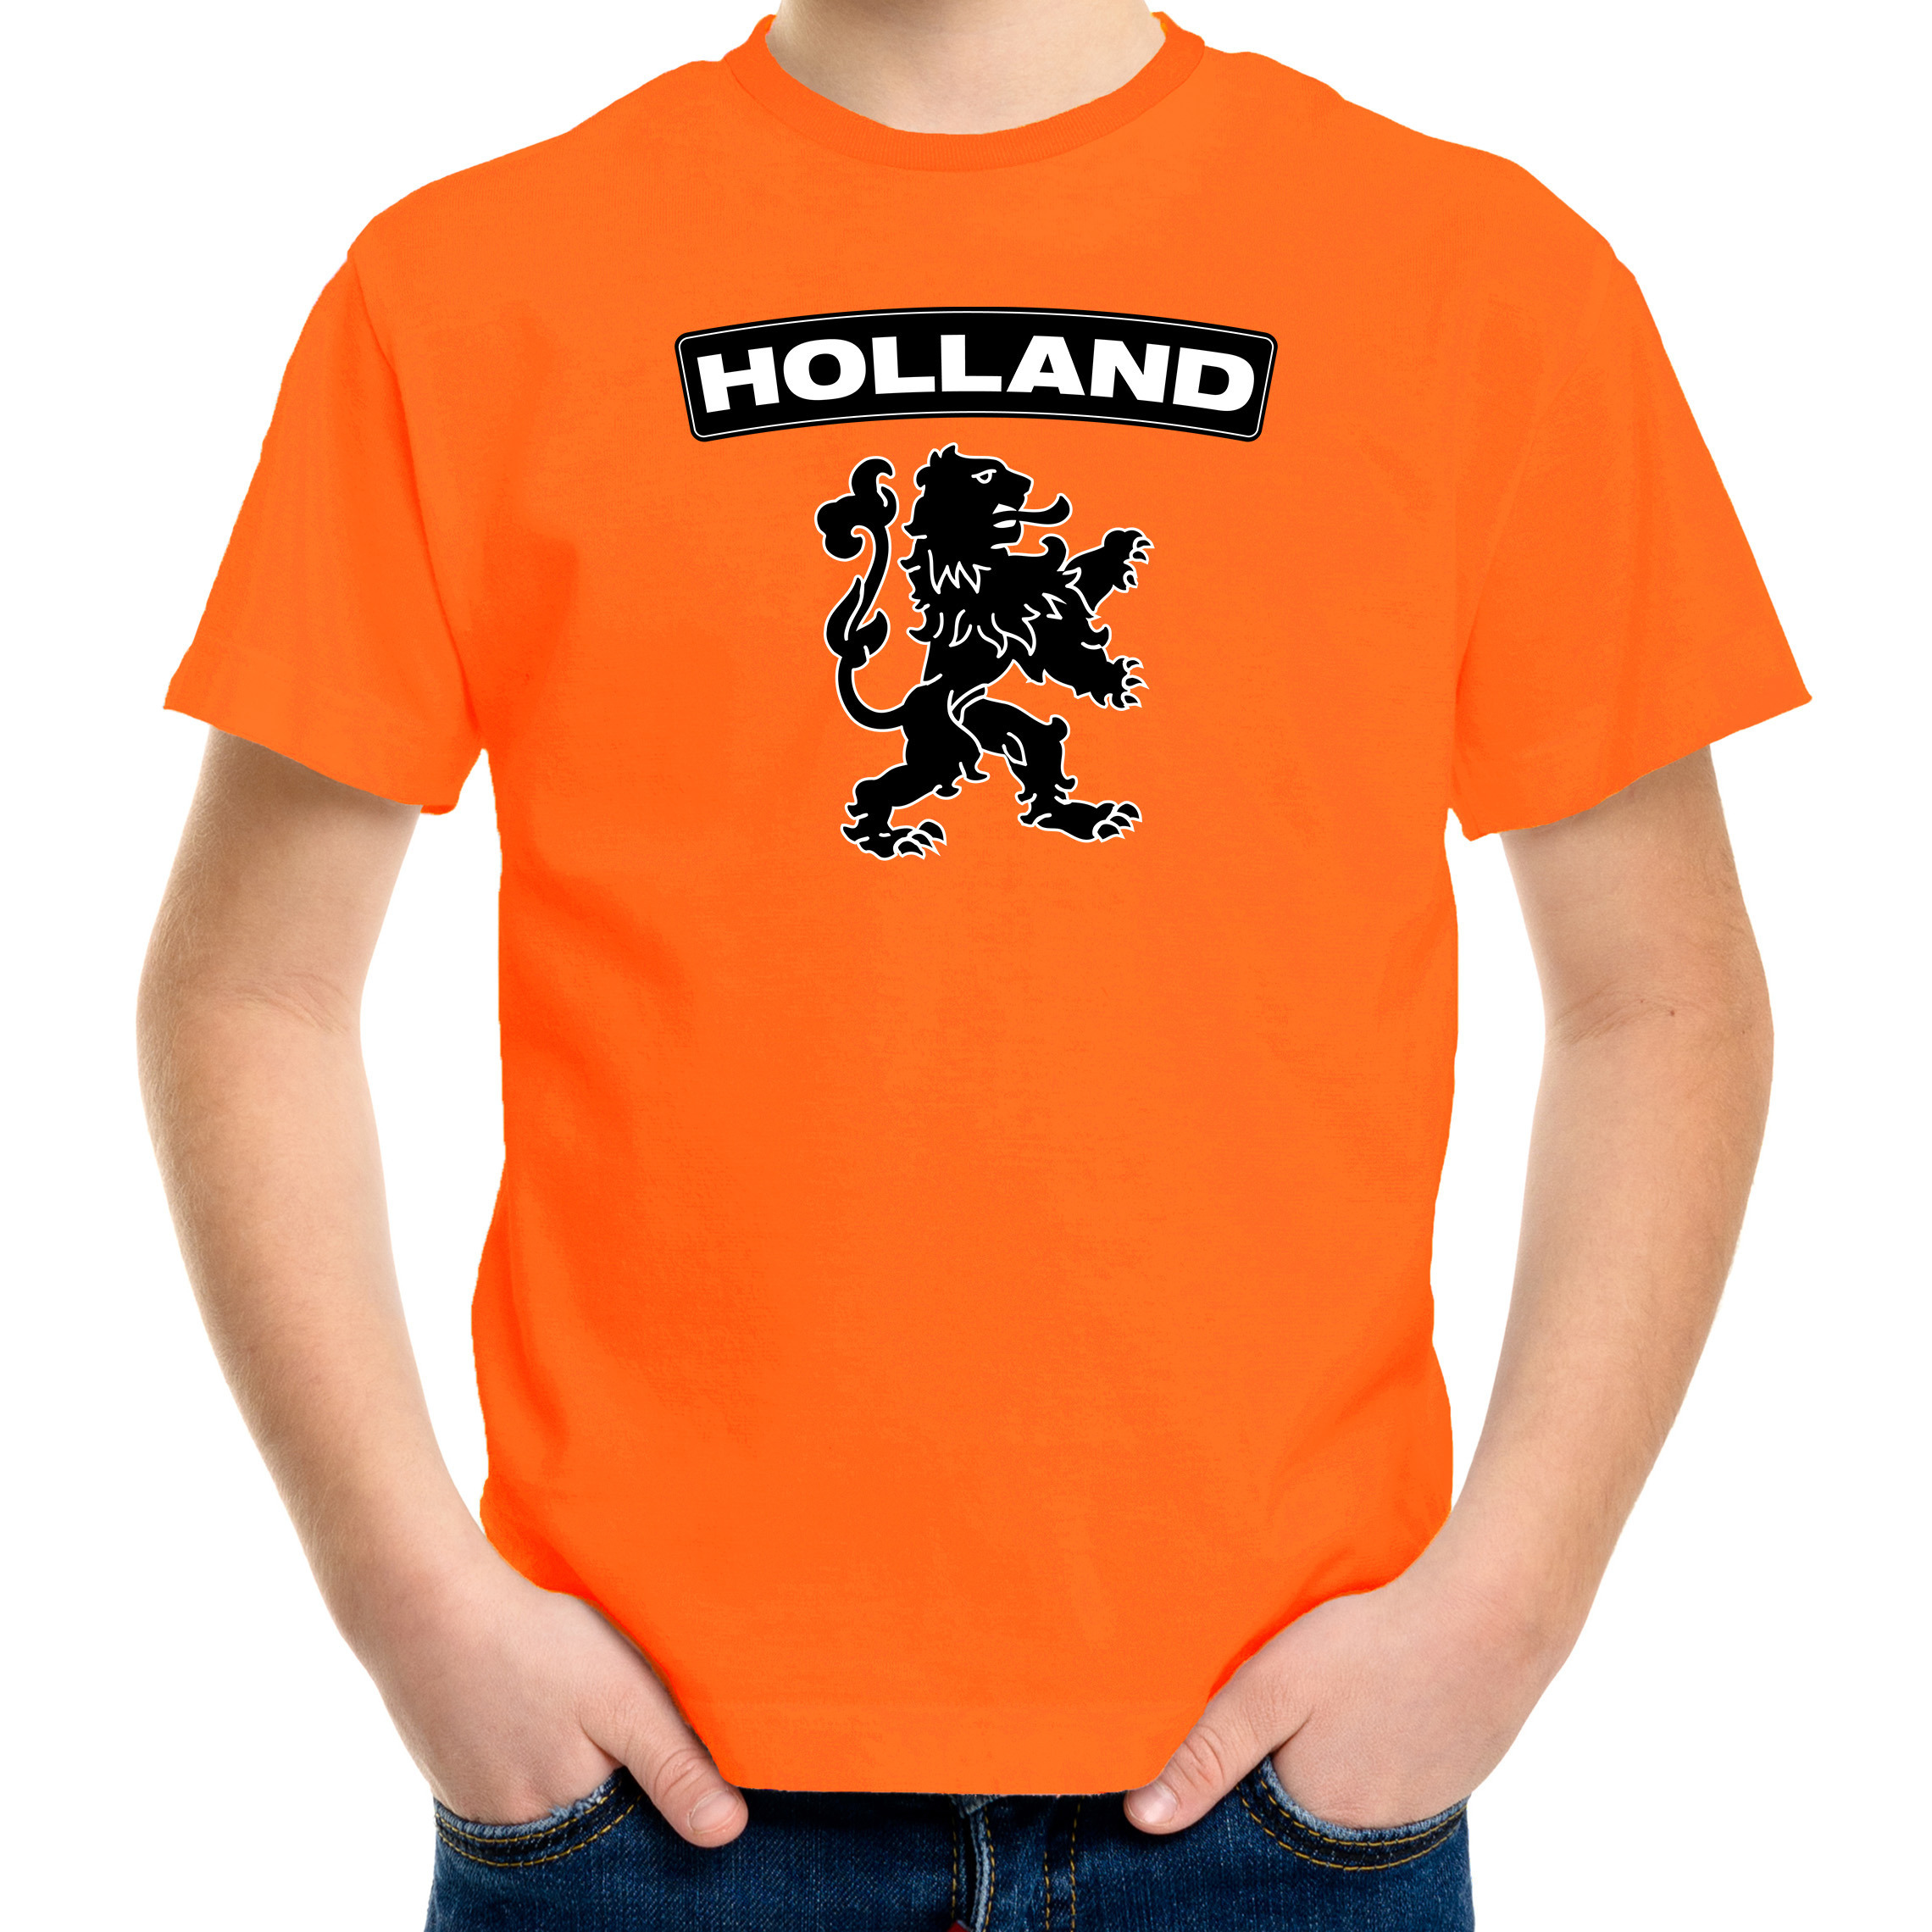 Oranje Holland shirt met zwarte leeuw kinderen